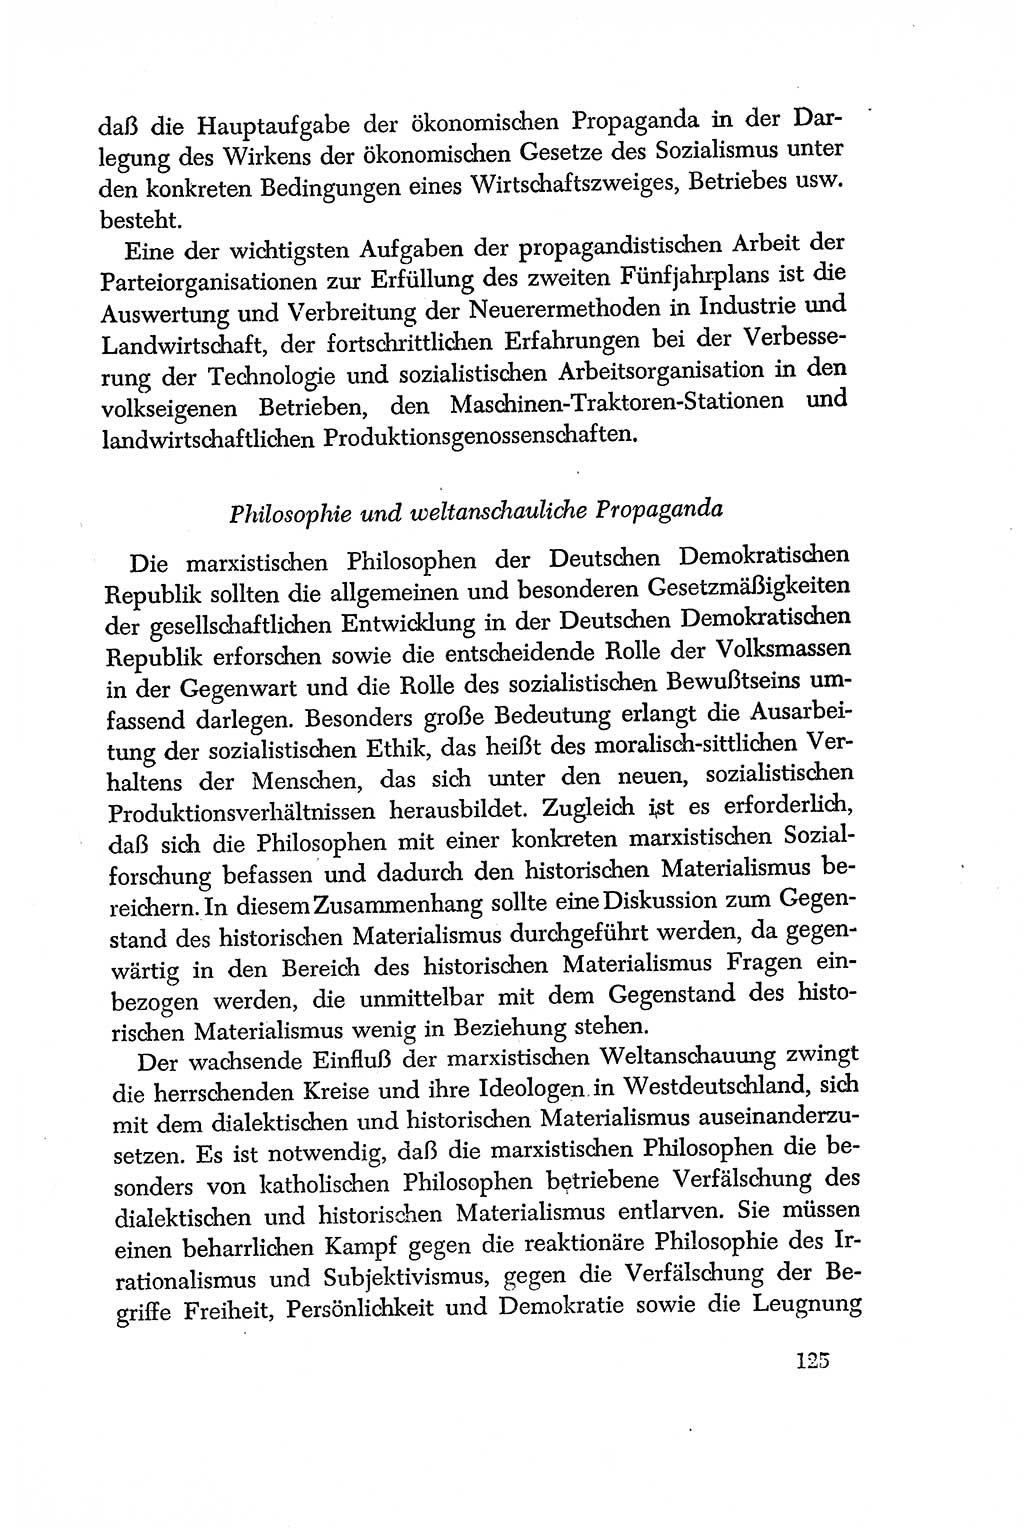 Dokumente der Sozialistischen Einheitspartei Deutschlands (SED) [Deutsche Demokratische Republik (DDR)] 1956-1957, Seite 125 (Dok. SED DDR 1956-1957, S. 125)